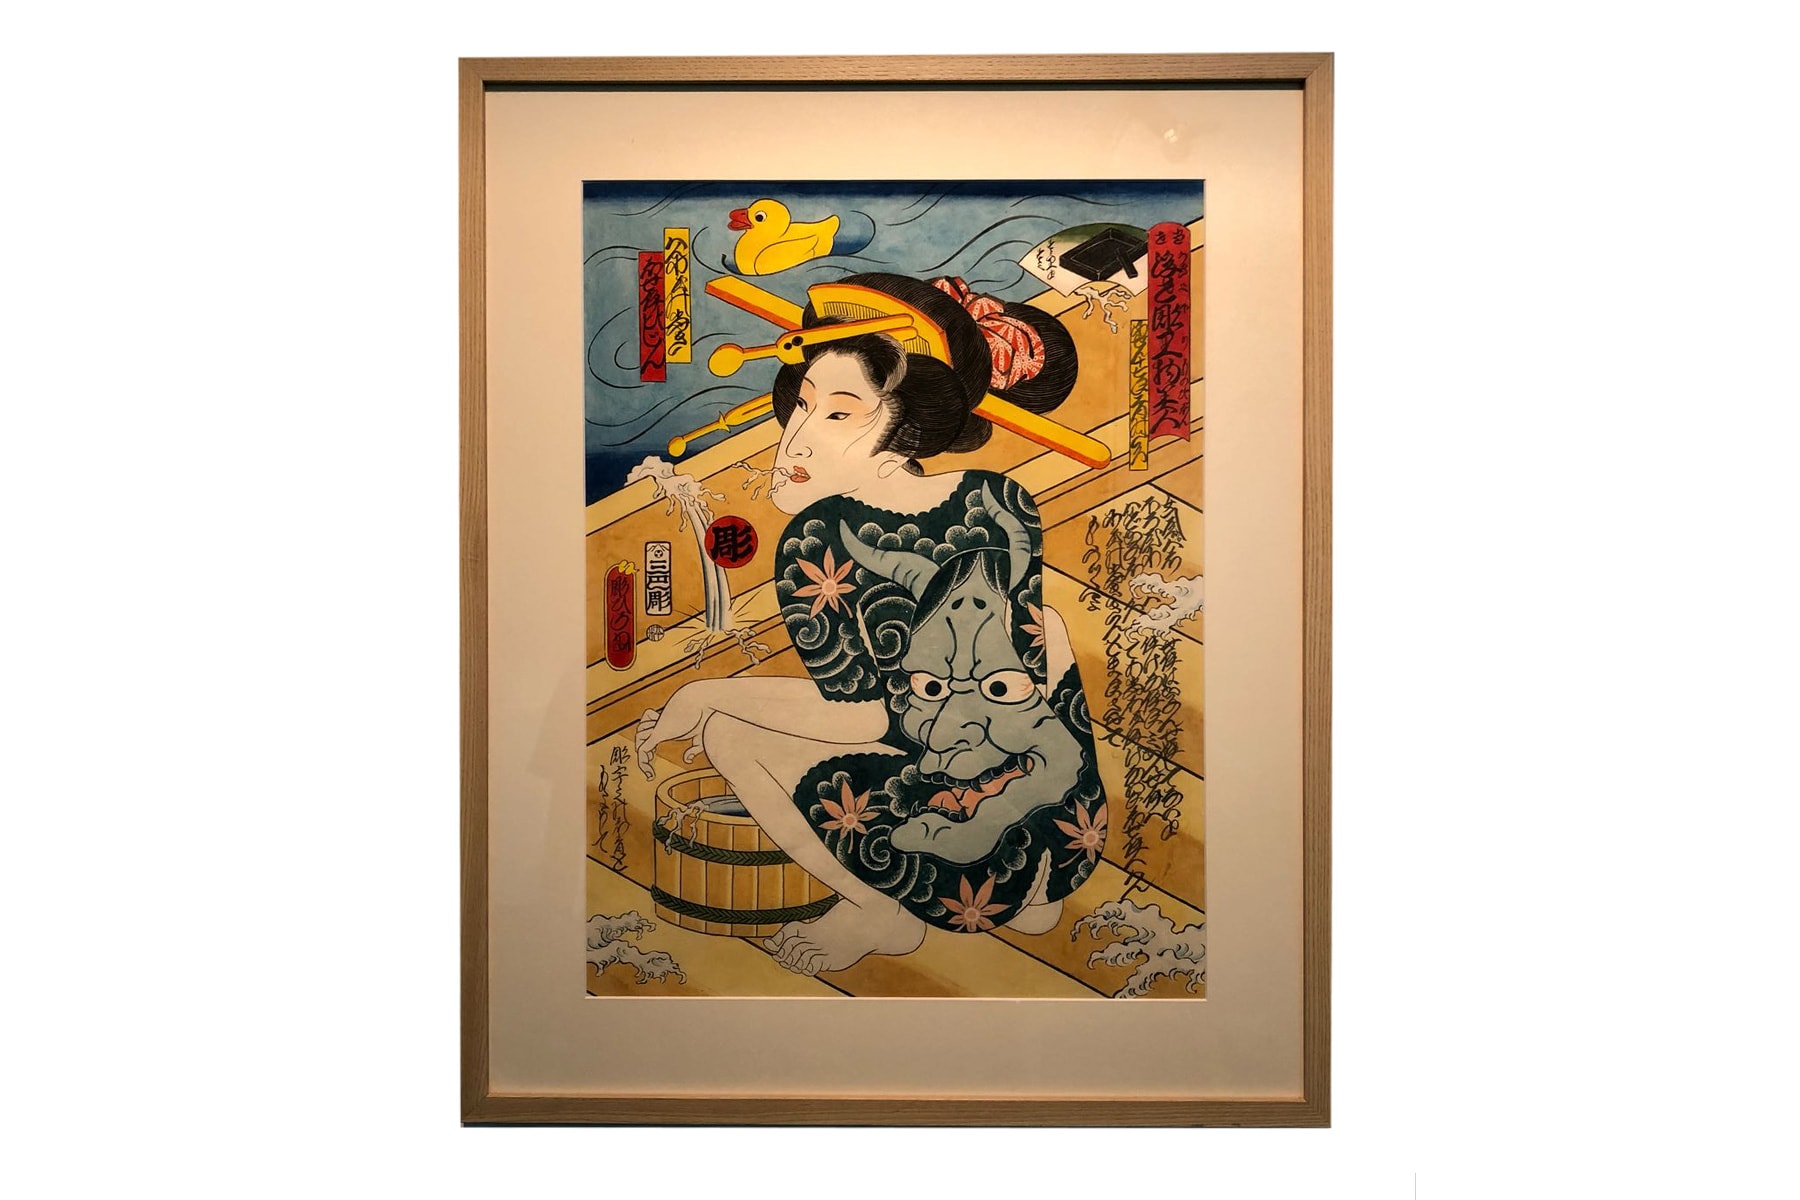 JPS Gallery 將舉辦日本「浮世繪調」藝術家原畫展